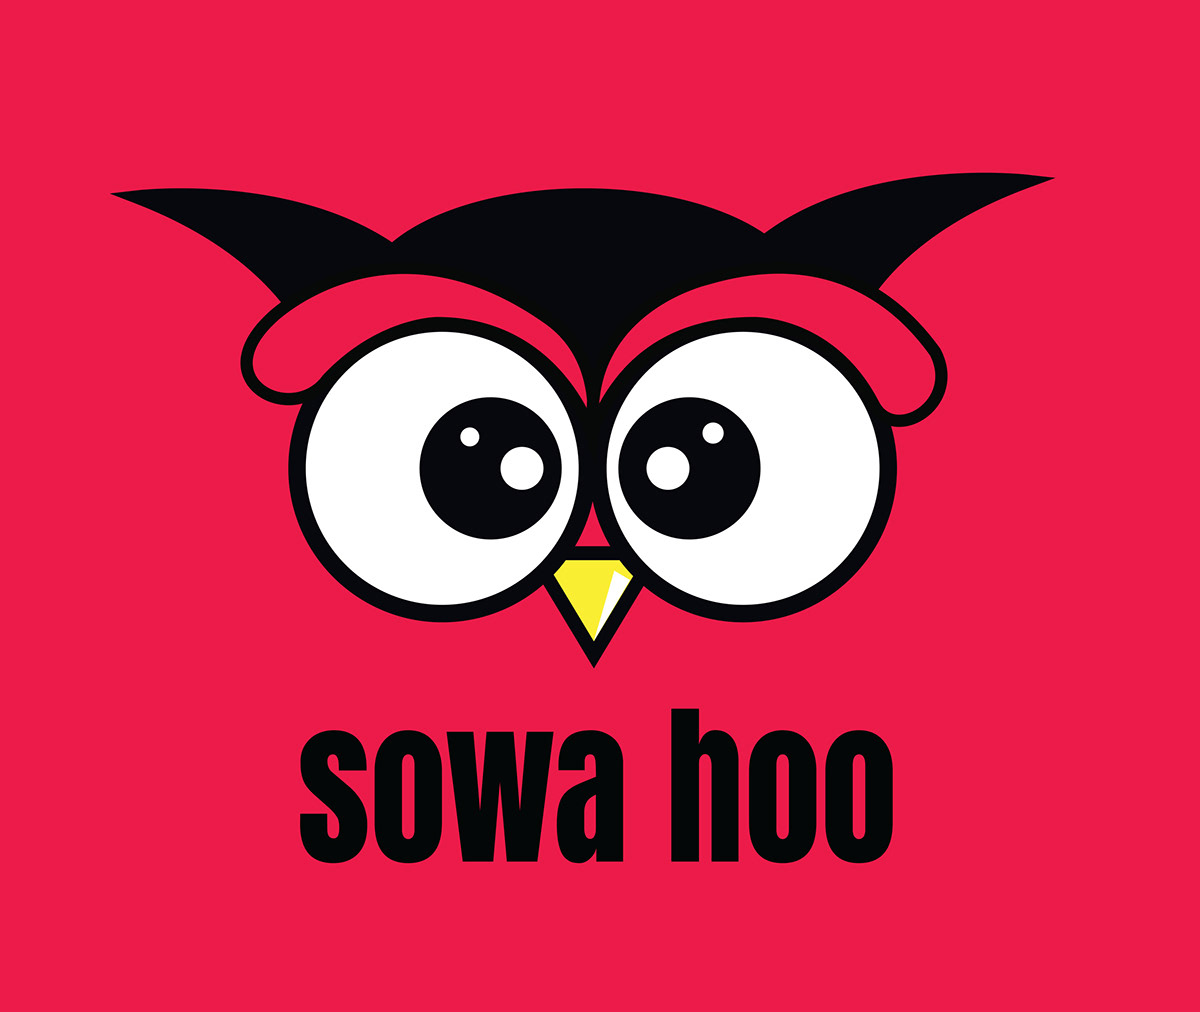 logo sowa owl cartoon